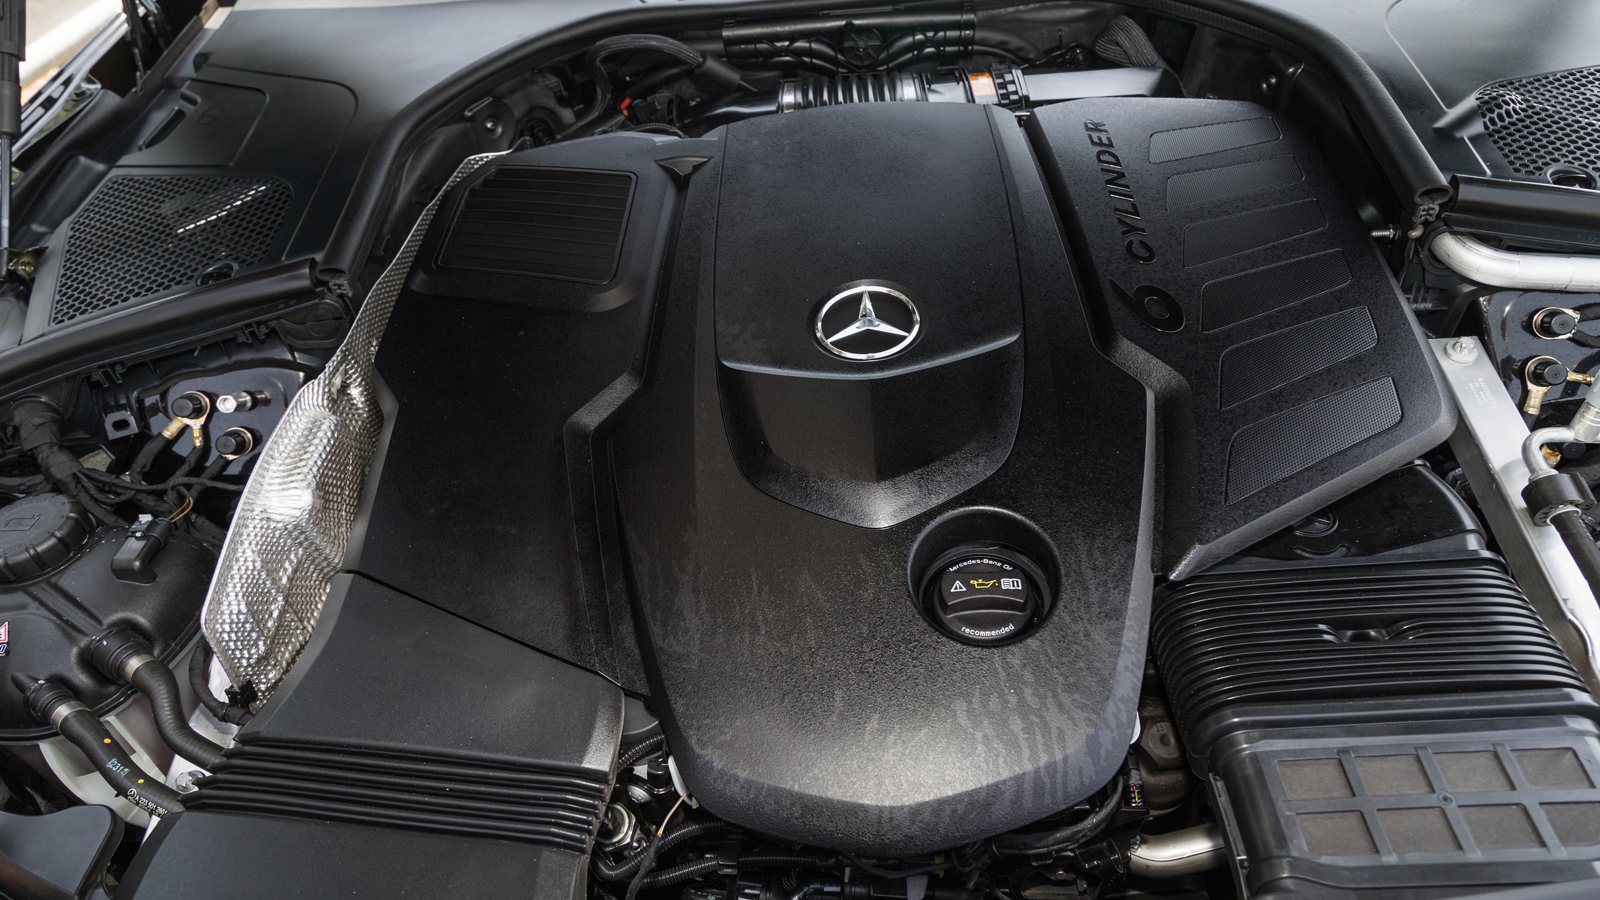 Ο 6κύλινδρος diesel κινητήρας των 2.925 κ.εκ. αποδίδει 286 ίππους και 600 Nm ροπής, με την κατανάλωση να μην ξεπερνάει τα 9,5 λίτρα, κάνοντας τη εντυπωσιακή Mercedes κατάλληλη ακόμα και για καθημερινή